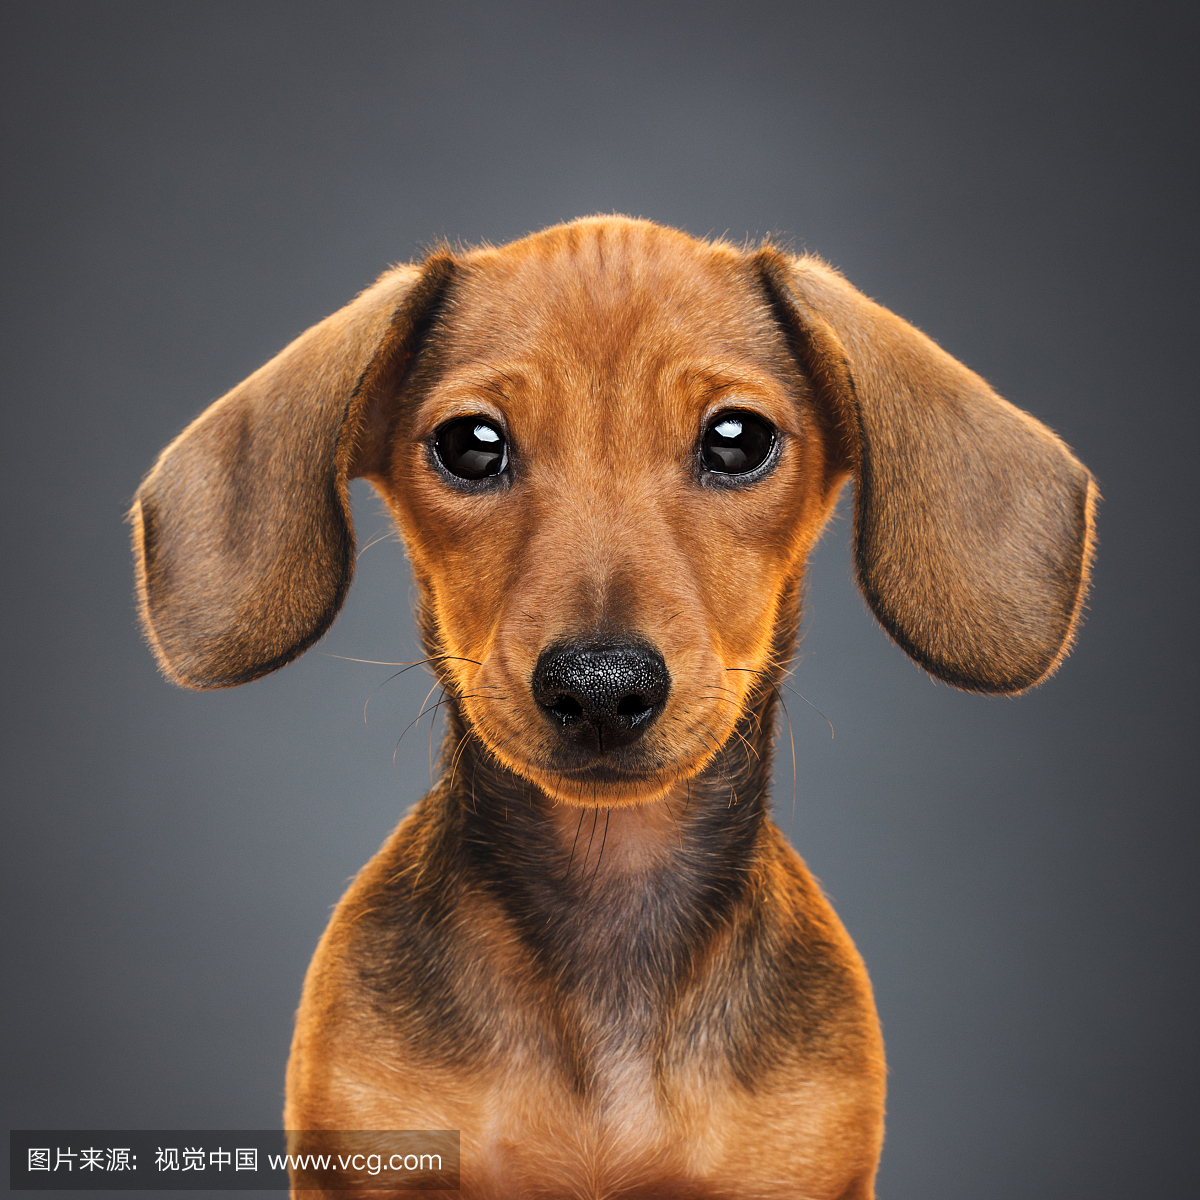 Teckel puppy dog portrait